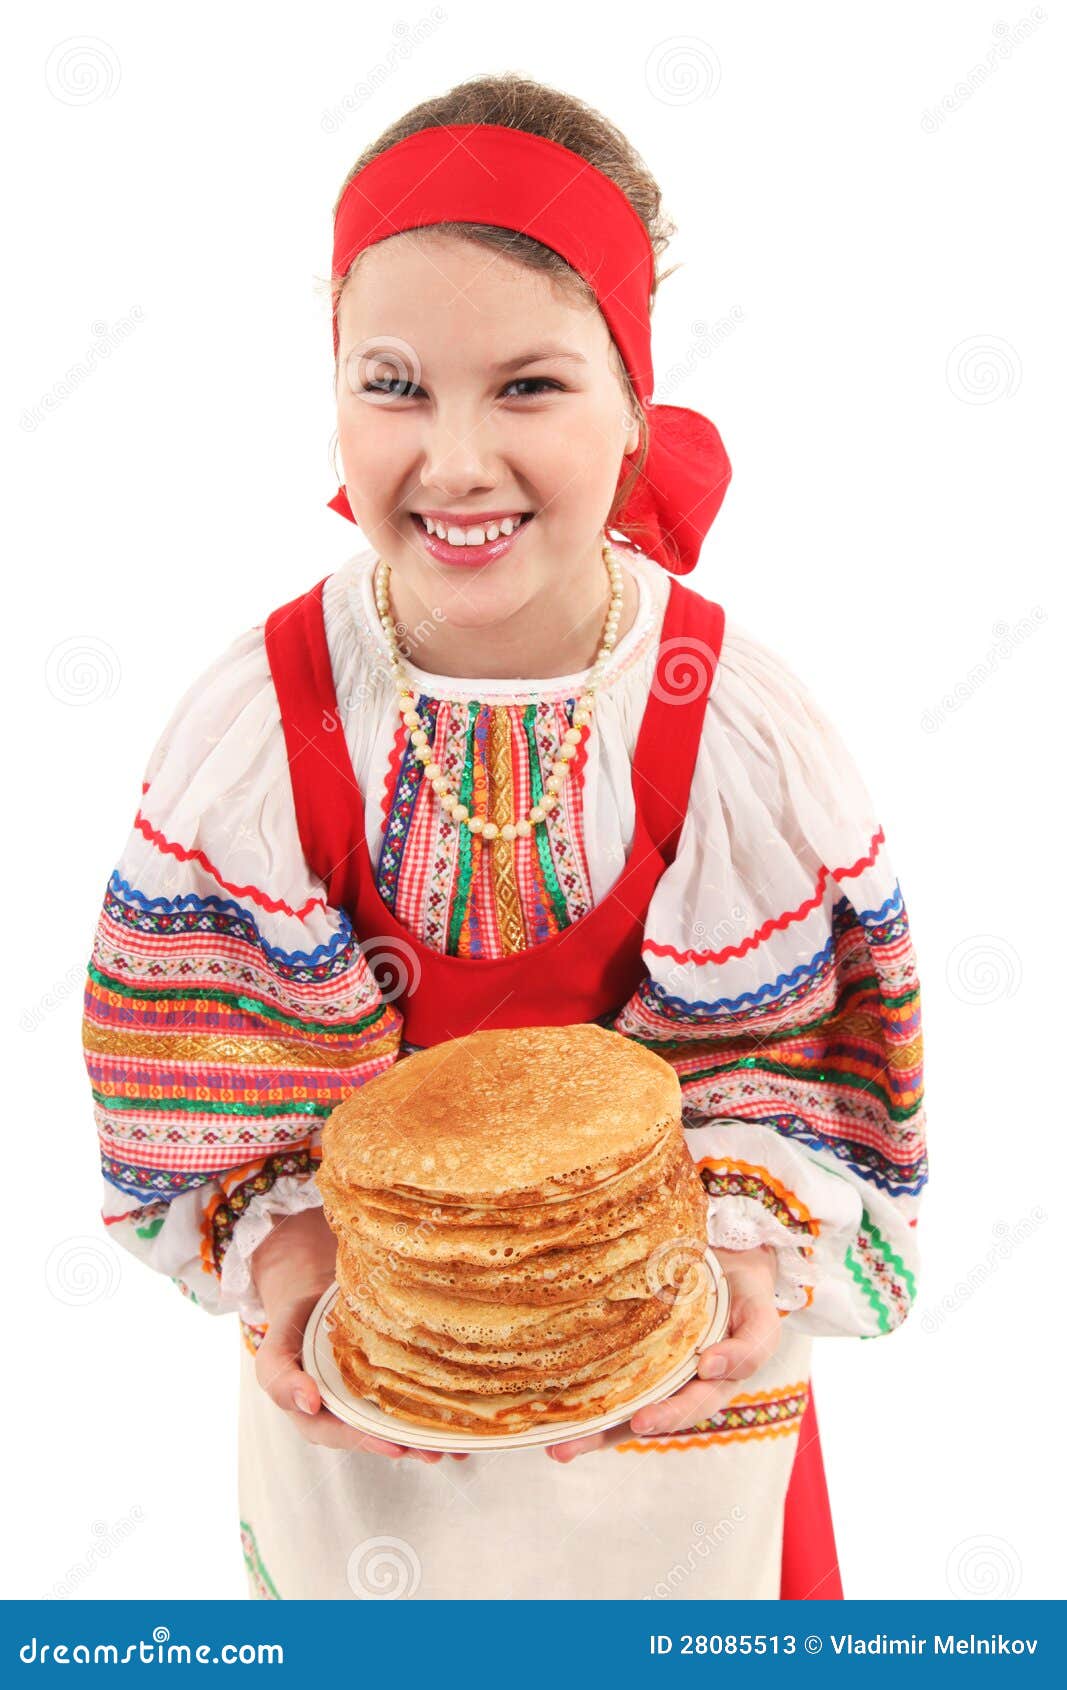 Девушка с блинами картинка. Девушка с блинами. Русские красавицы с блинами. Девушка в русском народном костюме с блинами. Девушка с блинами в национальном костюме.